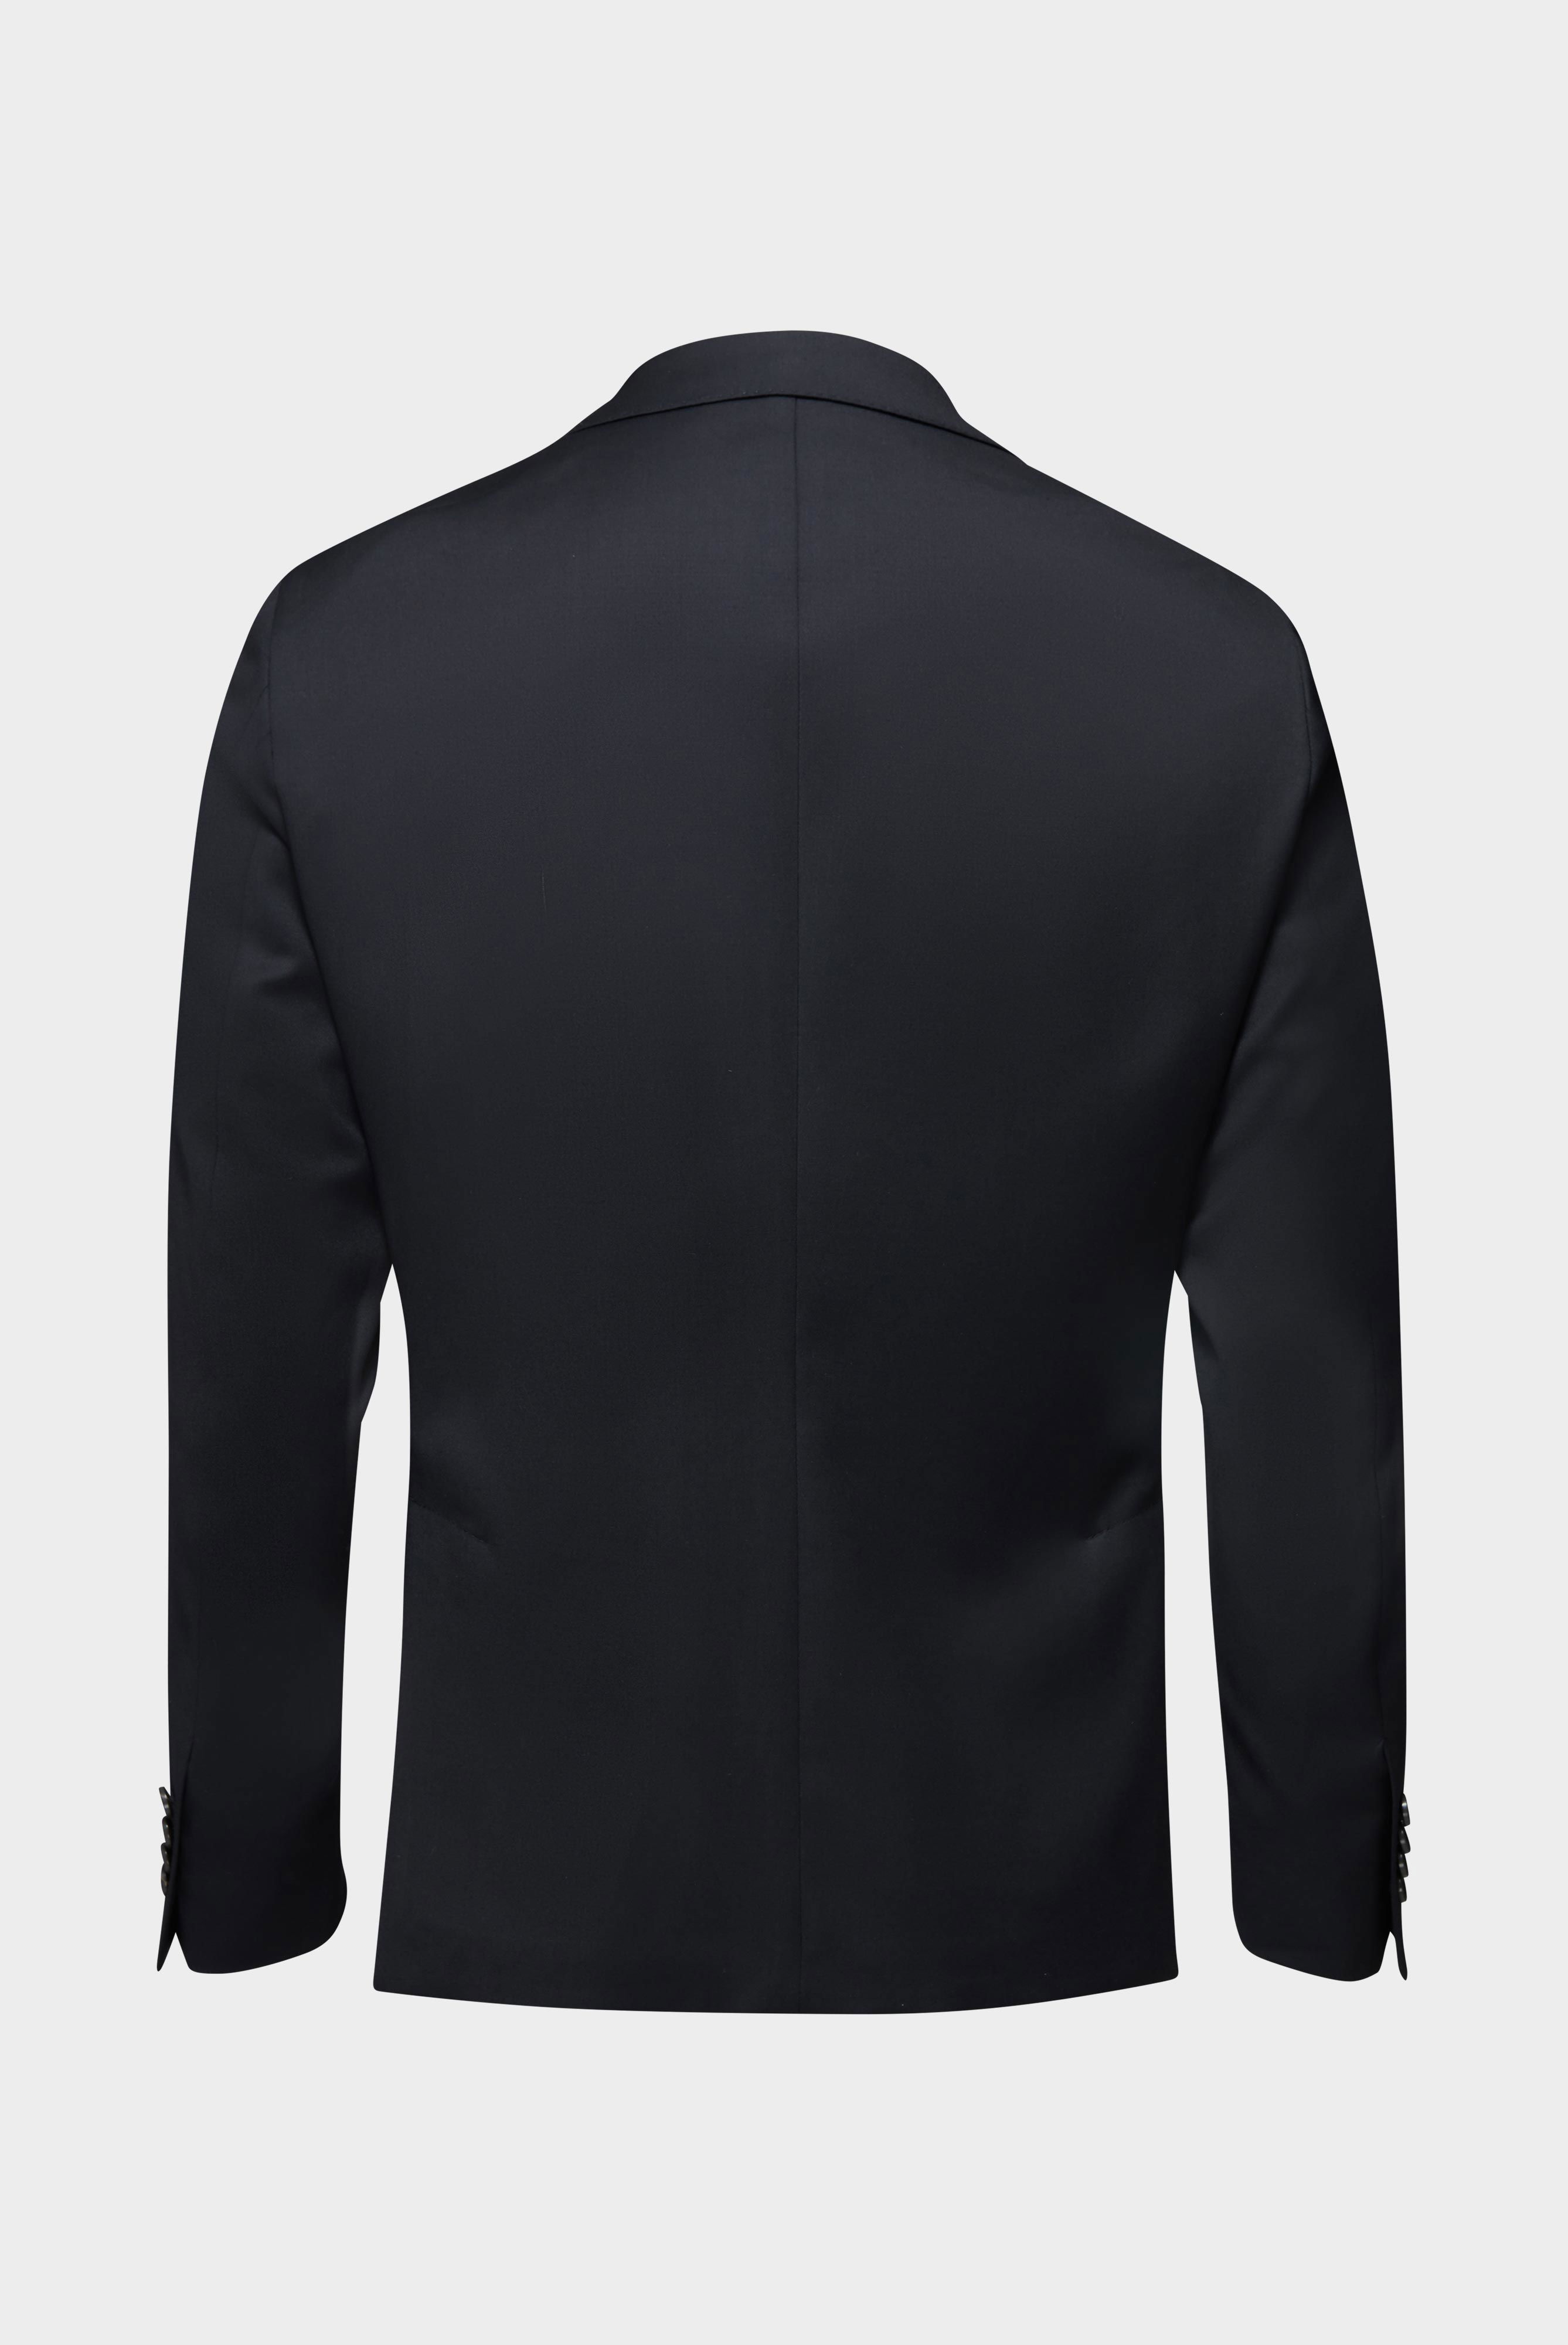 Blazers+Wool Jacket Slim Fit+20.7759..H01010.099.46